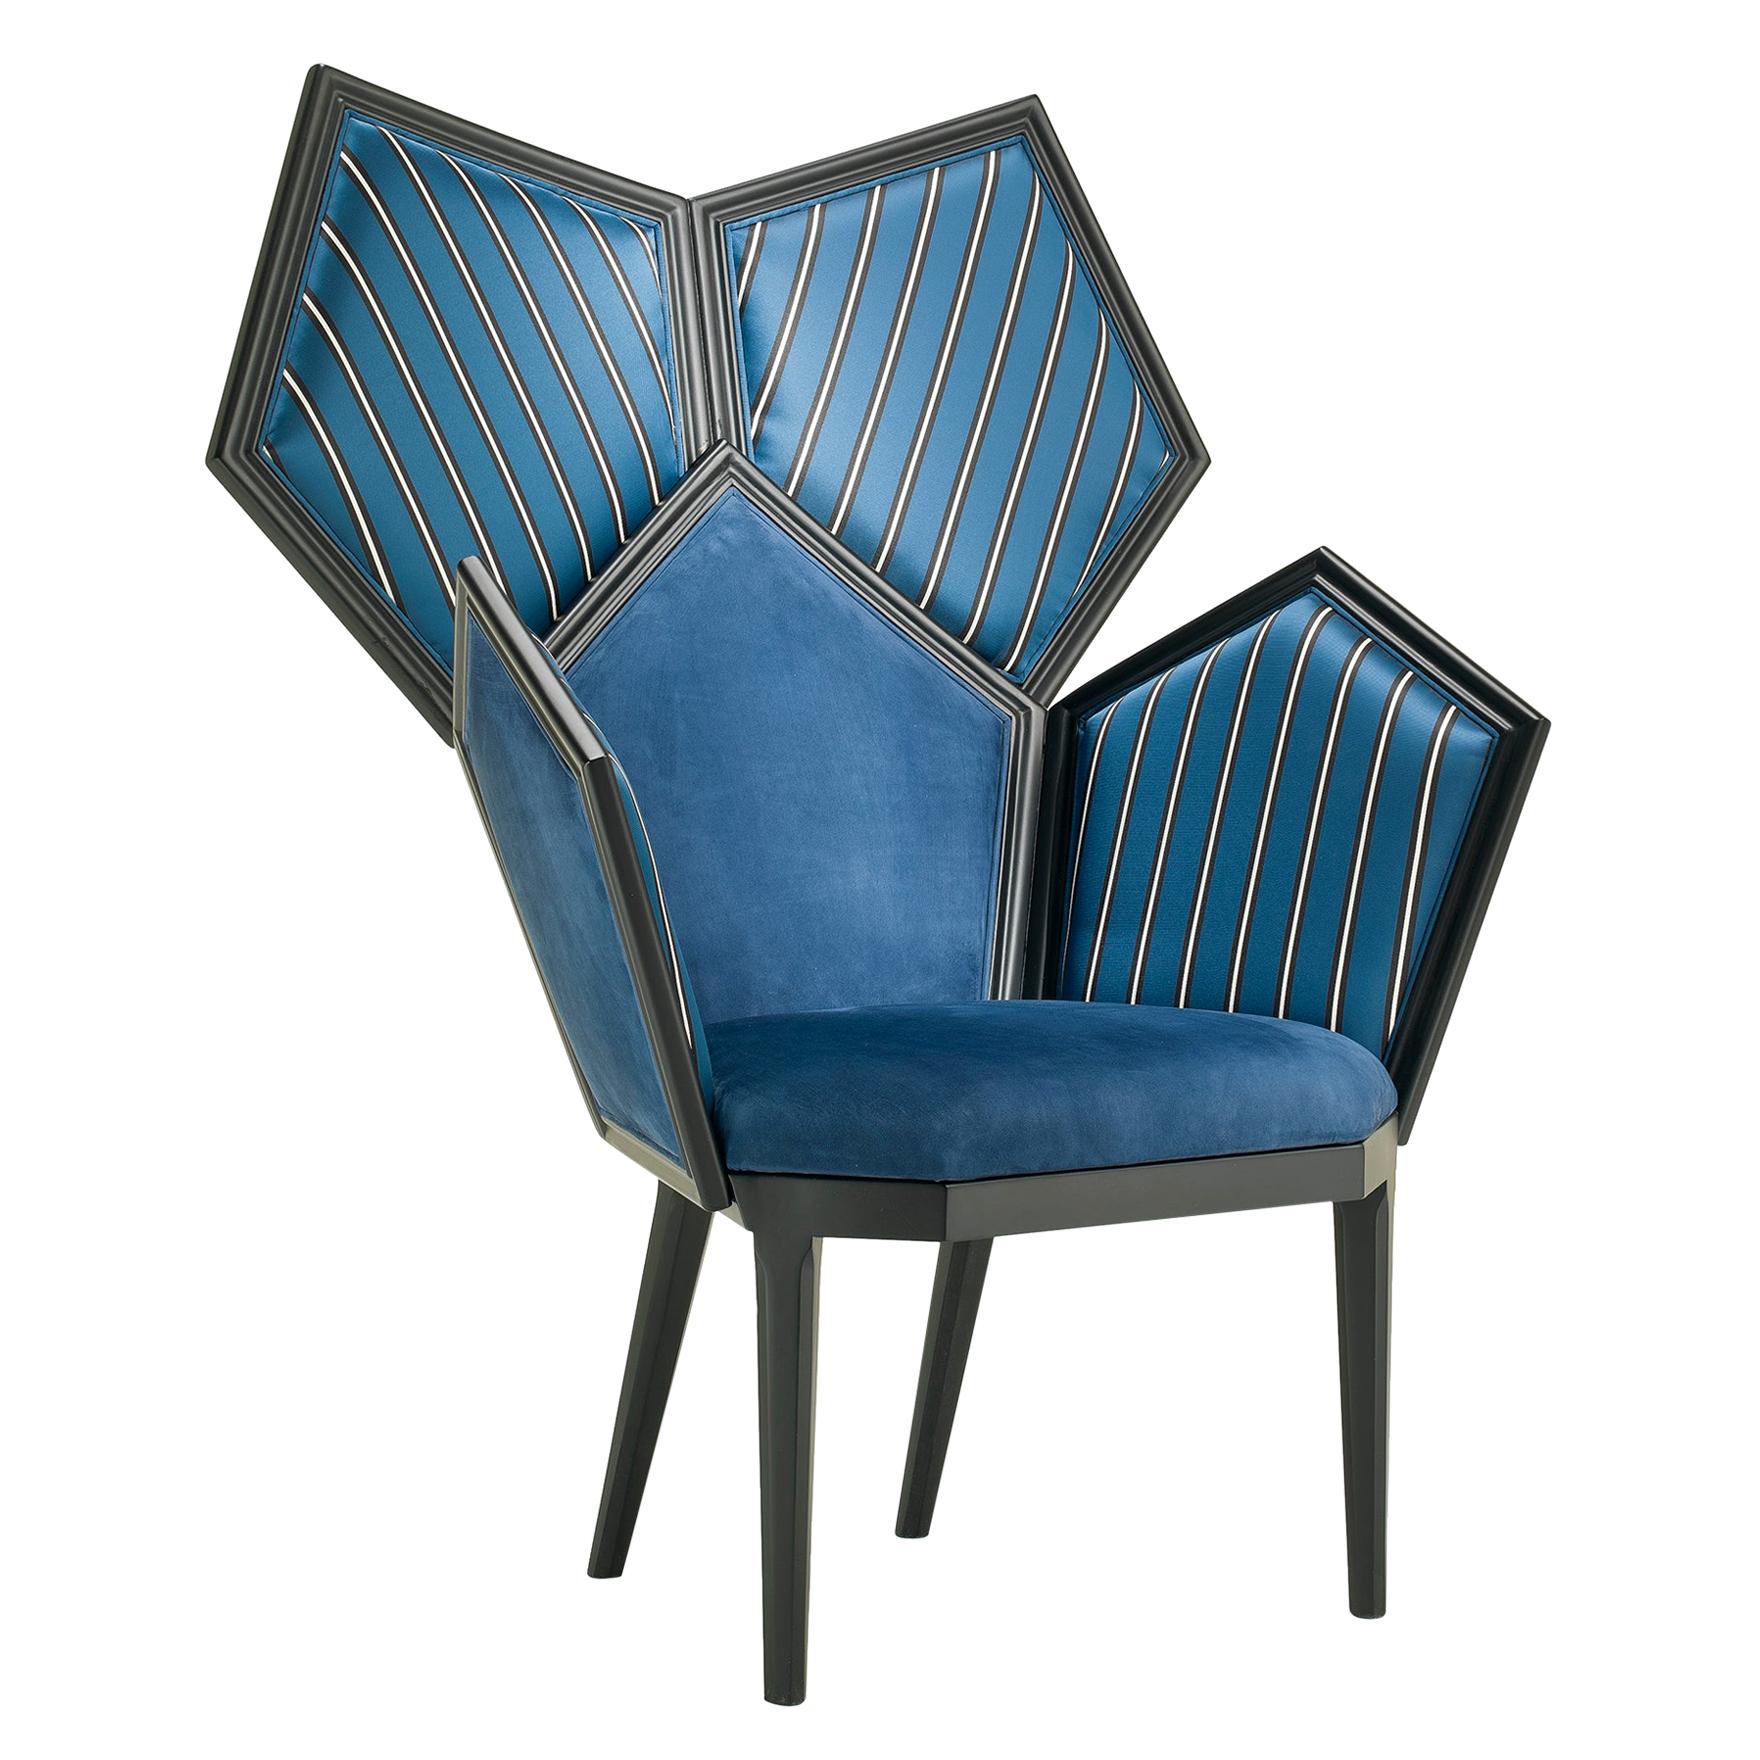 LUI 5/A Blauer gepolsterter und lackierter Sessel aus Pentagons, zusammengesetzt aus Pentagons